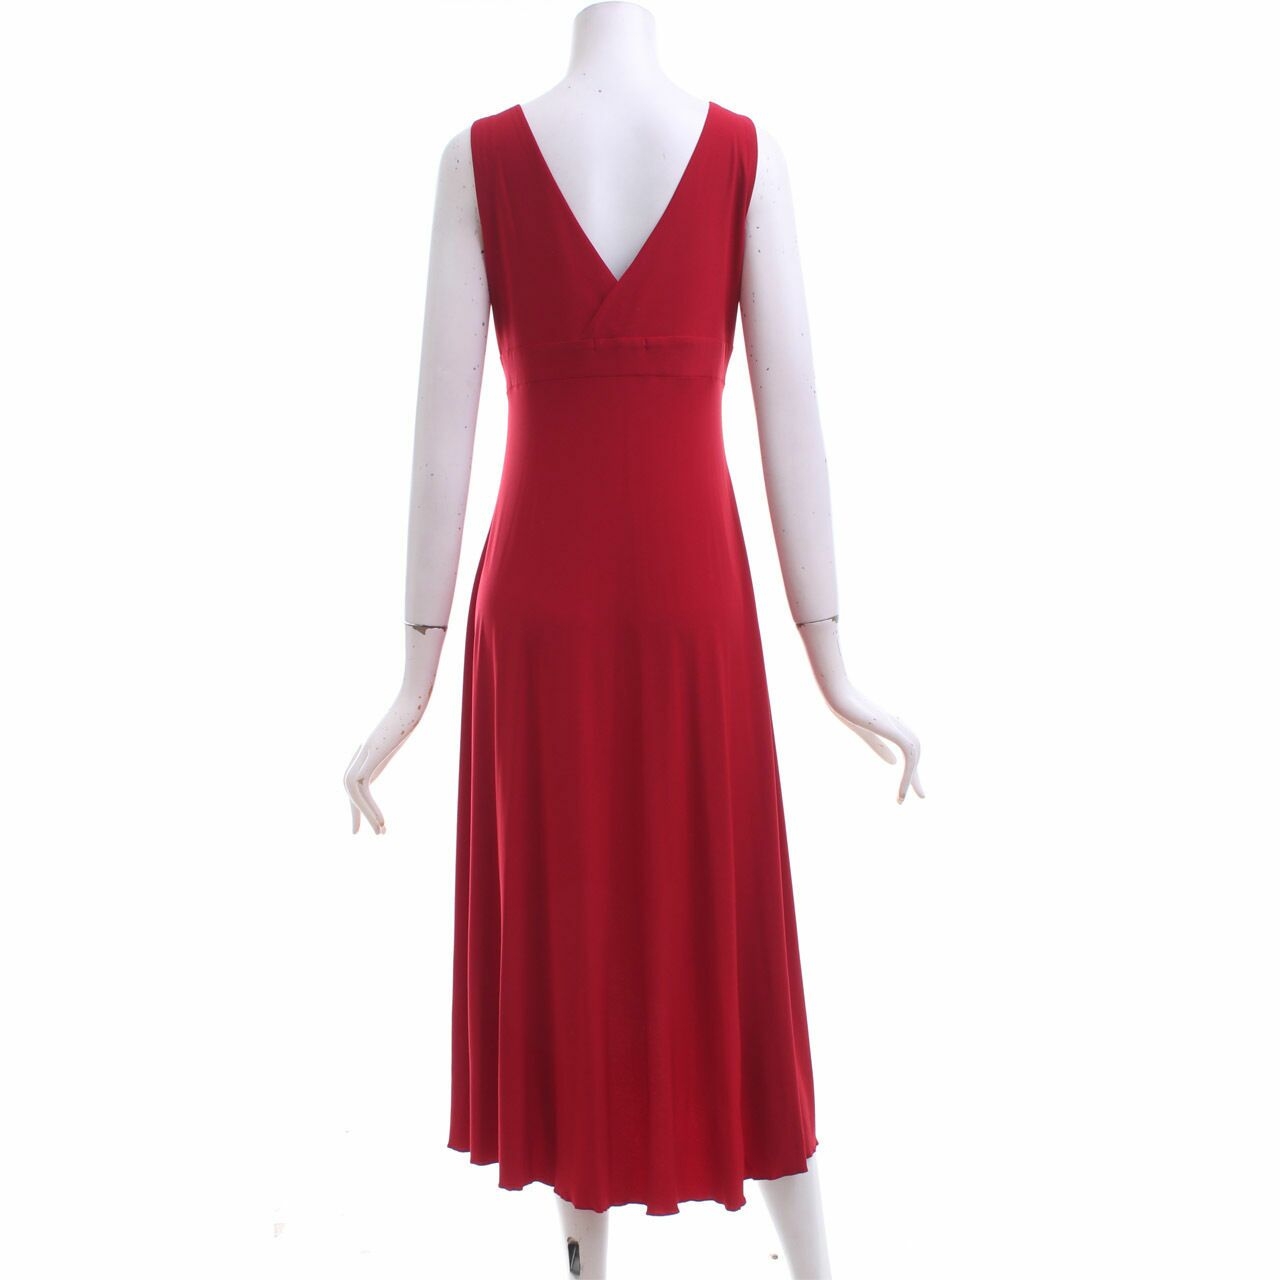 TheoryX Red Midi Dress